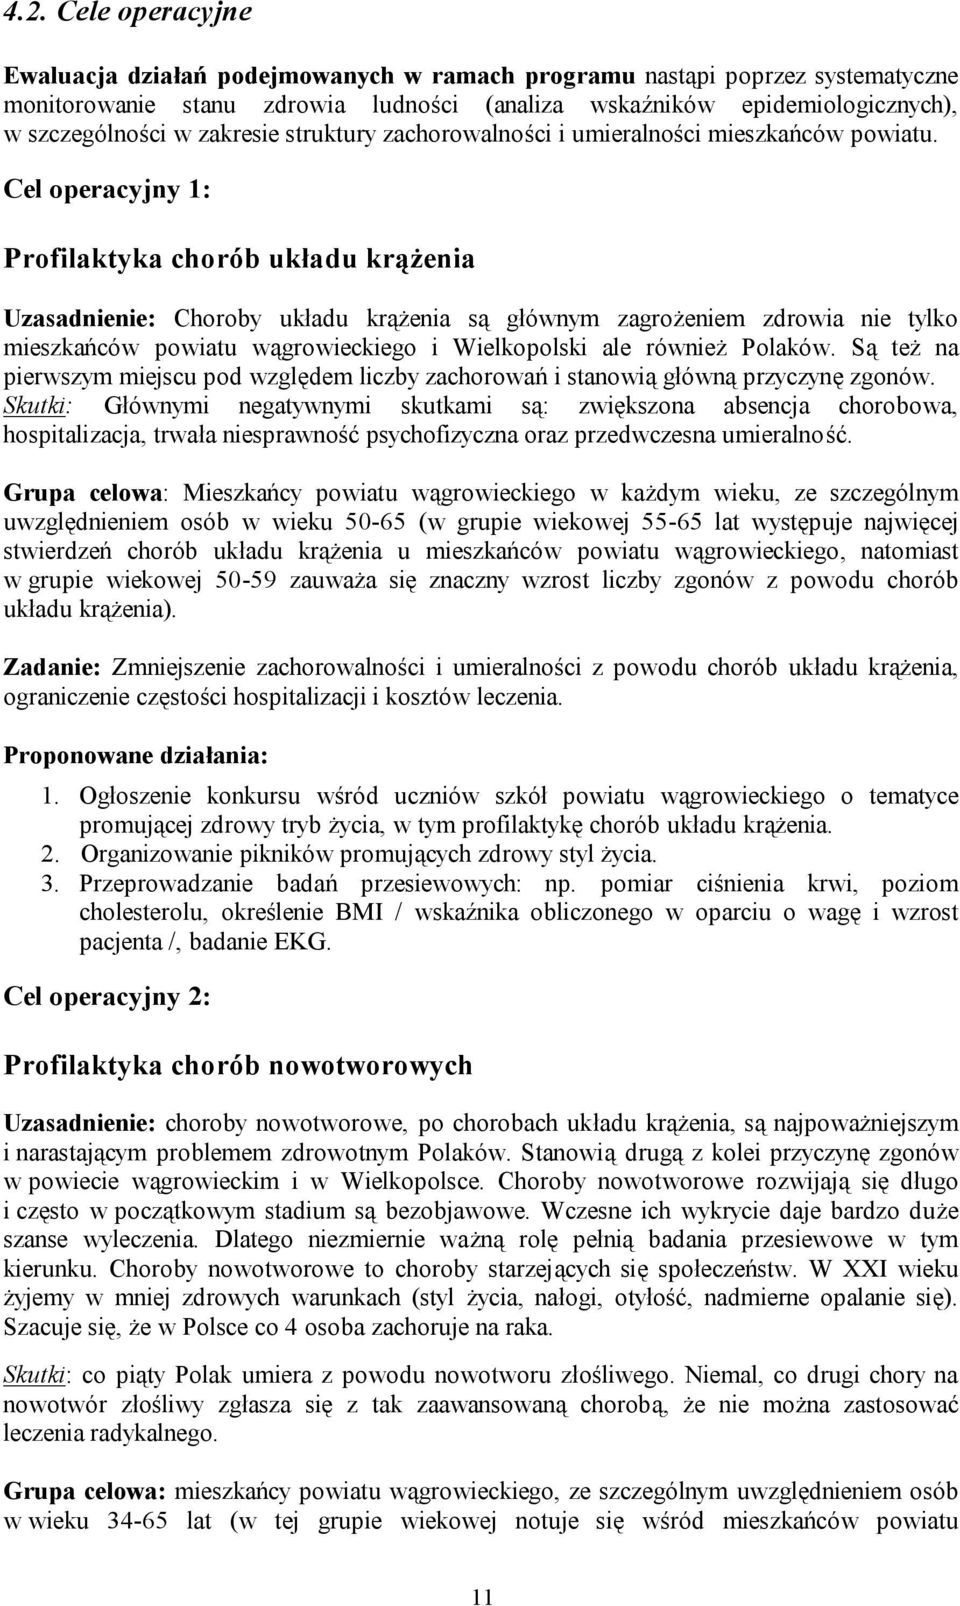 Cel operacyjny 1: Profilaktyka chorób układu krążenia Uzasadnienie: Choroby układu krążenia są głównym zagrożeniem zdrowia nie tylko mieszkańców powiatu wągrowieckiego i Wielkopolski ale również